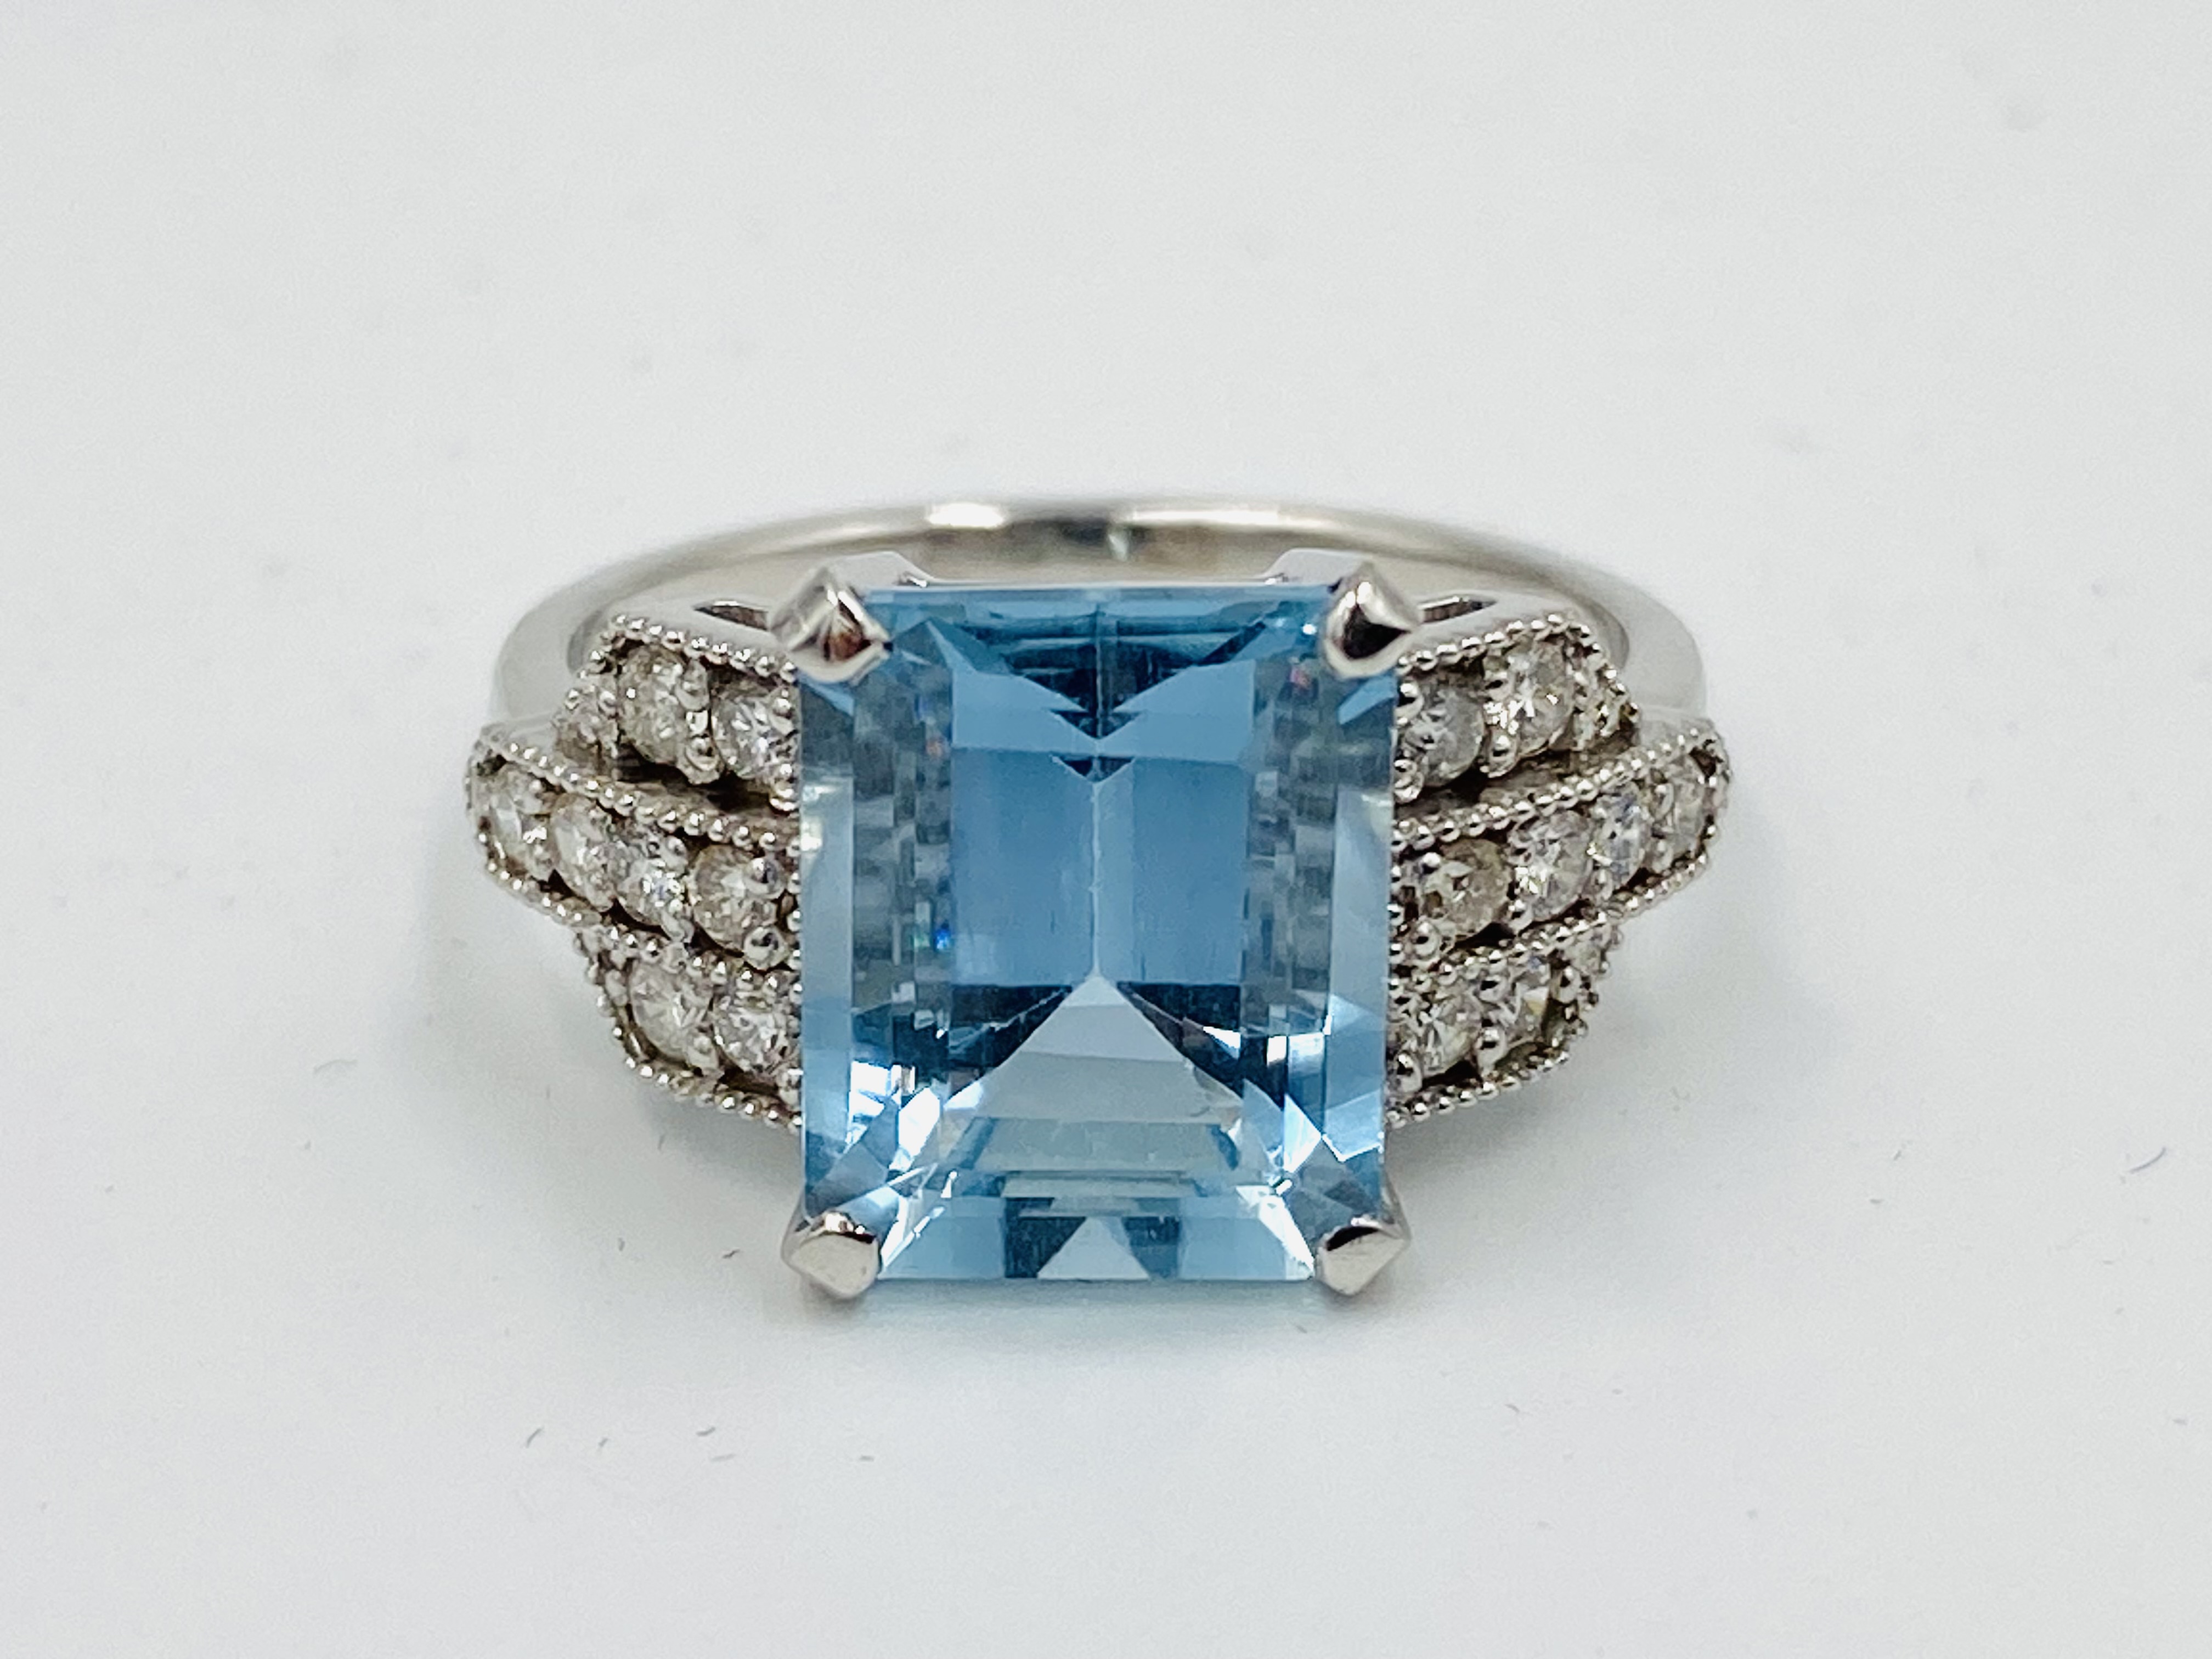 18ct white gold, aquamarine and diamond ring